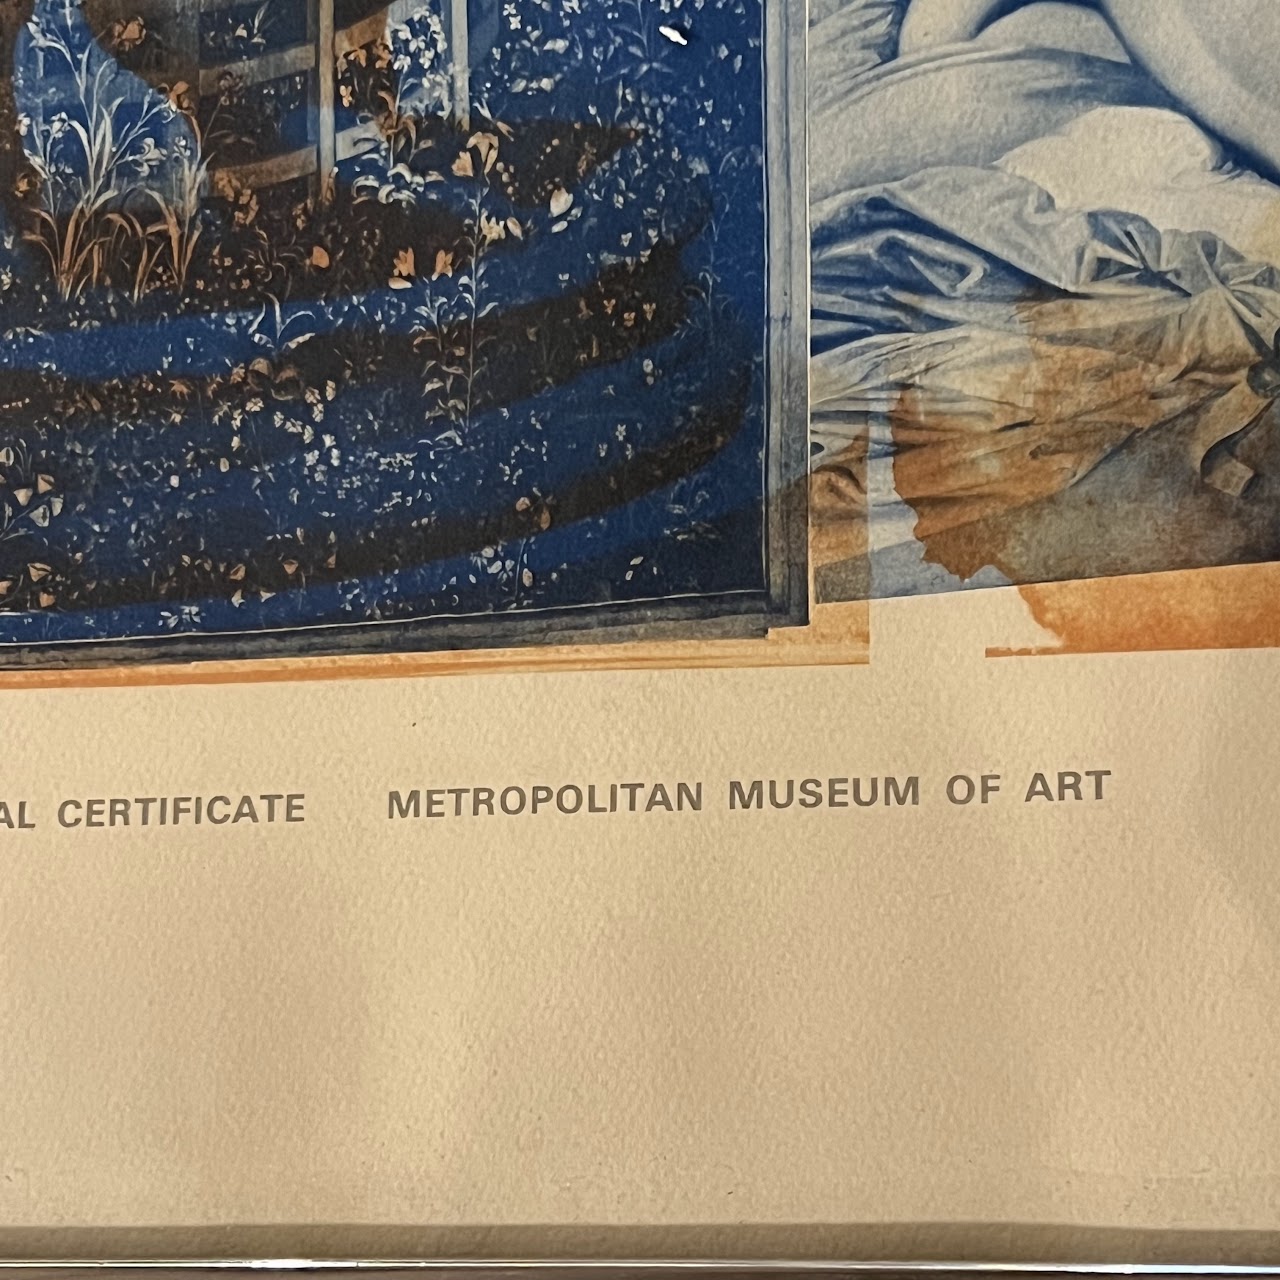 Robert Rauschenberg MMA Centennial Certificate 1970 Exhibition Lithograph